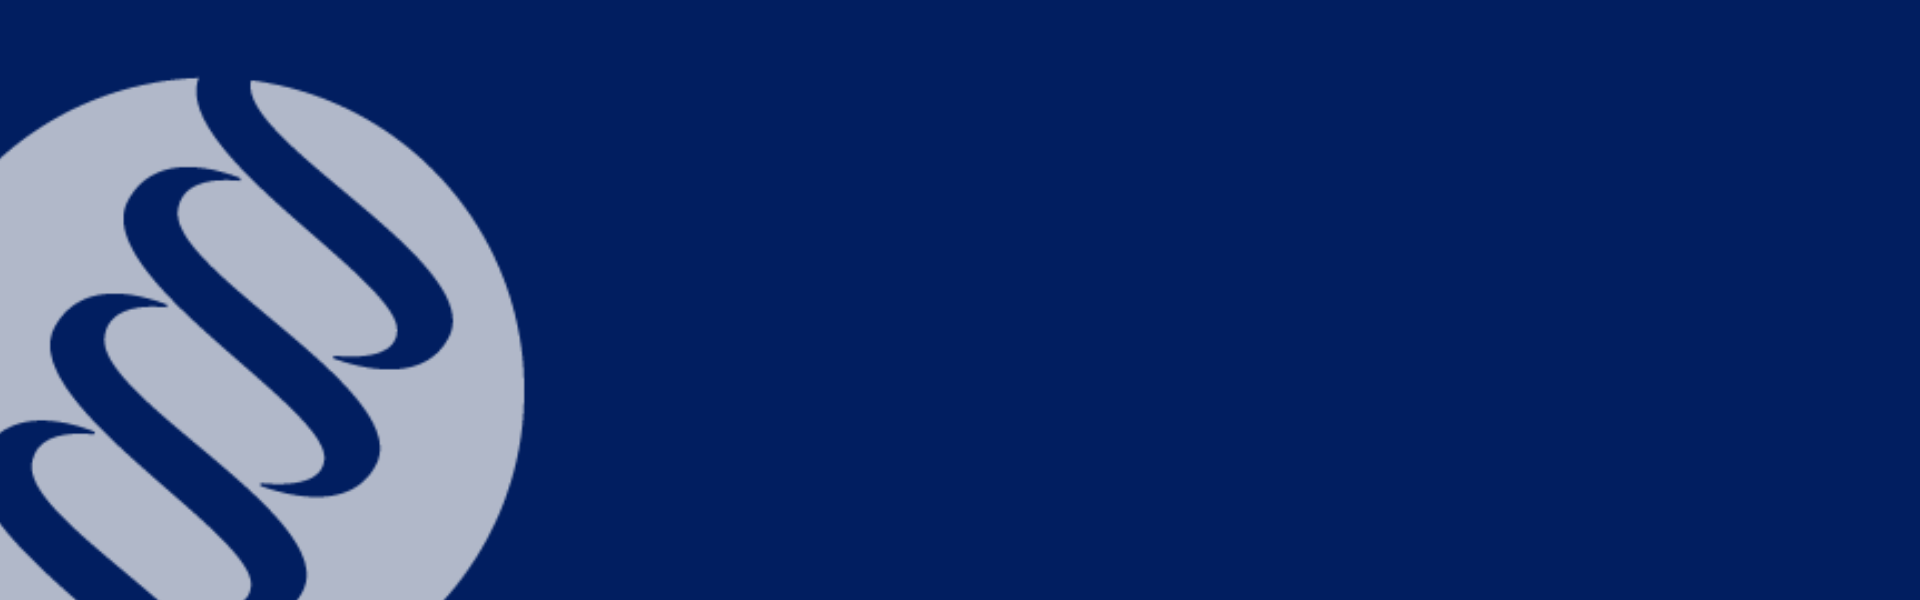 LeanDNA Logo Banner Dark Blue